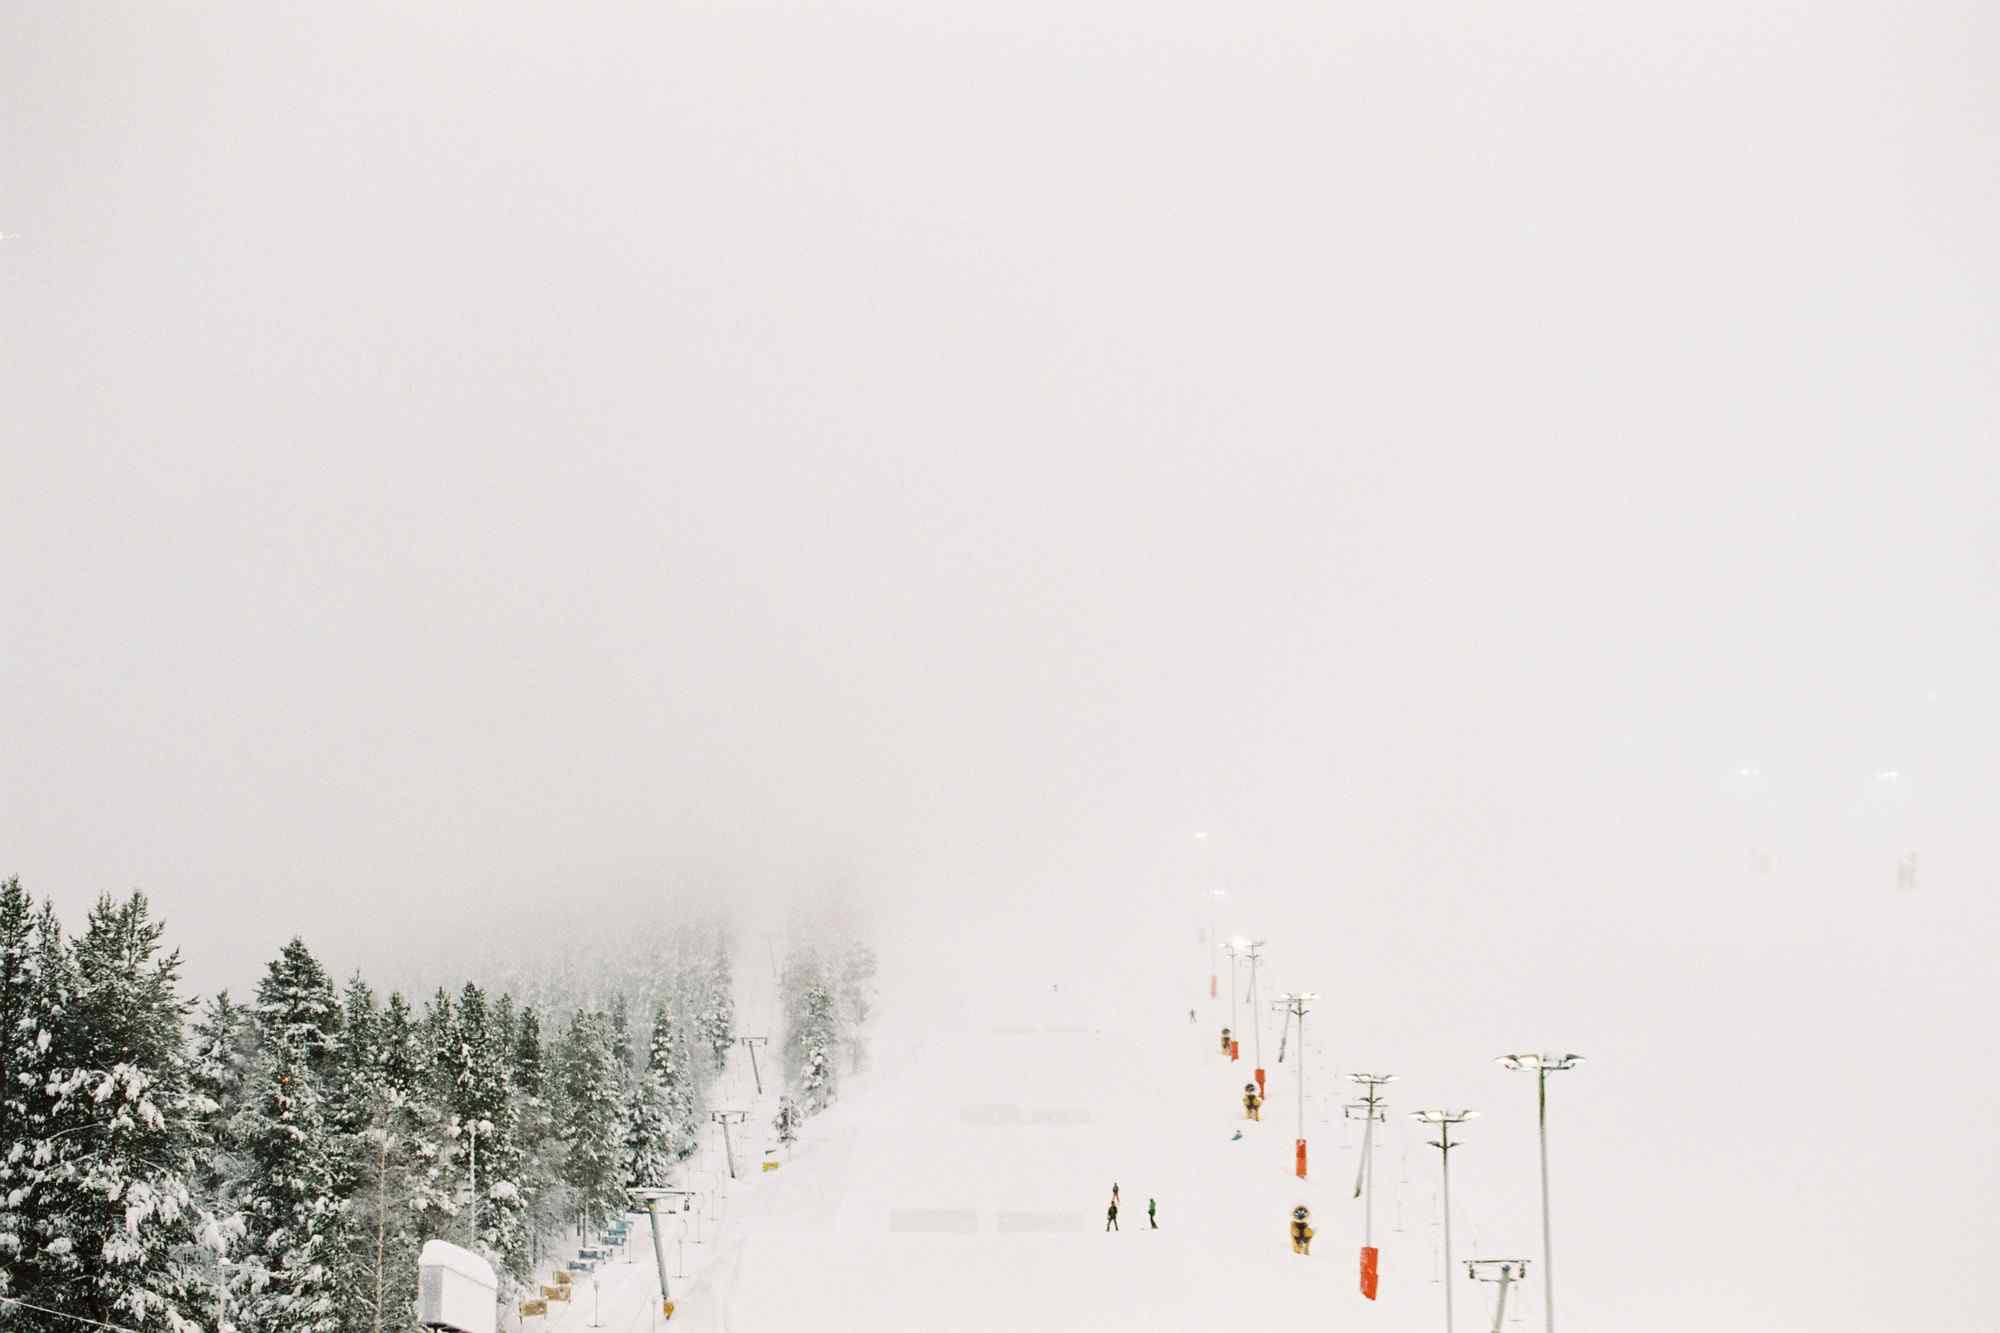 纯白雪雾中的芬兰滑雪场桌面壁纸